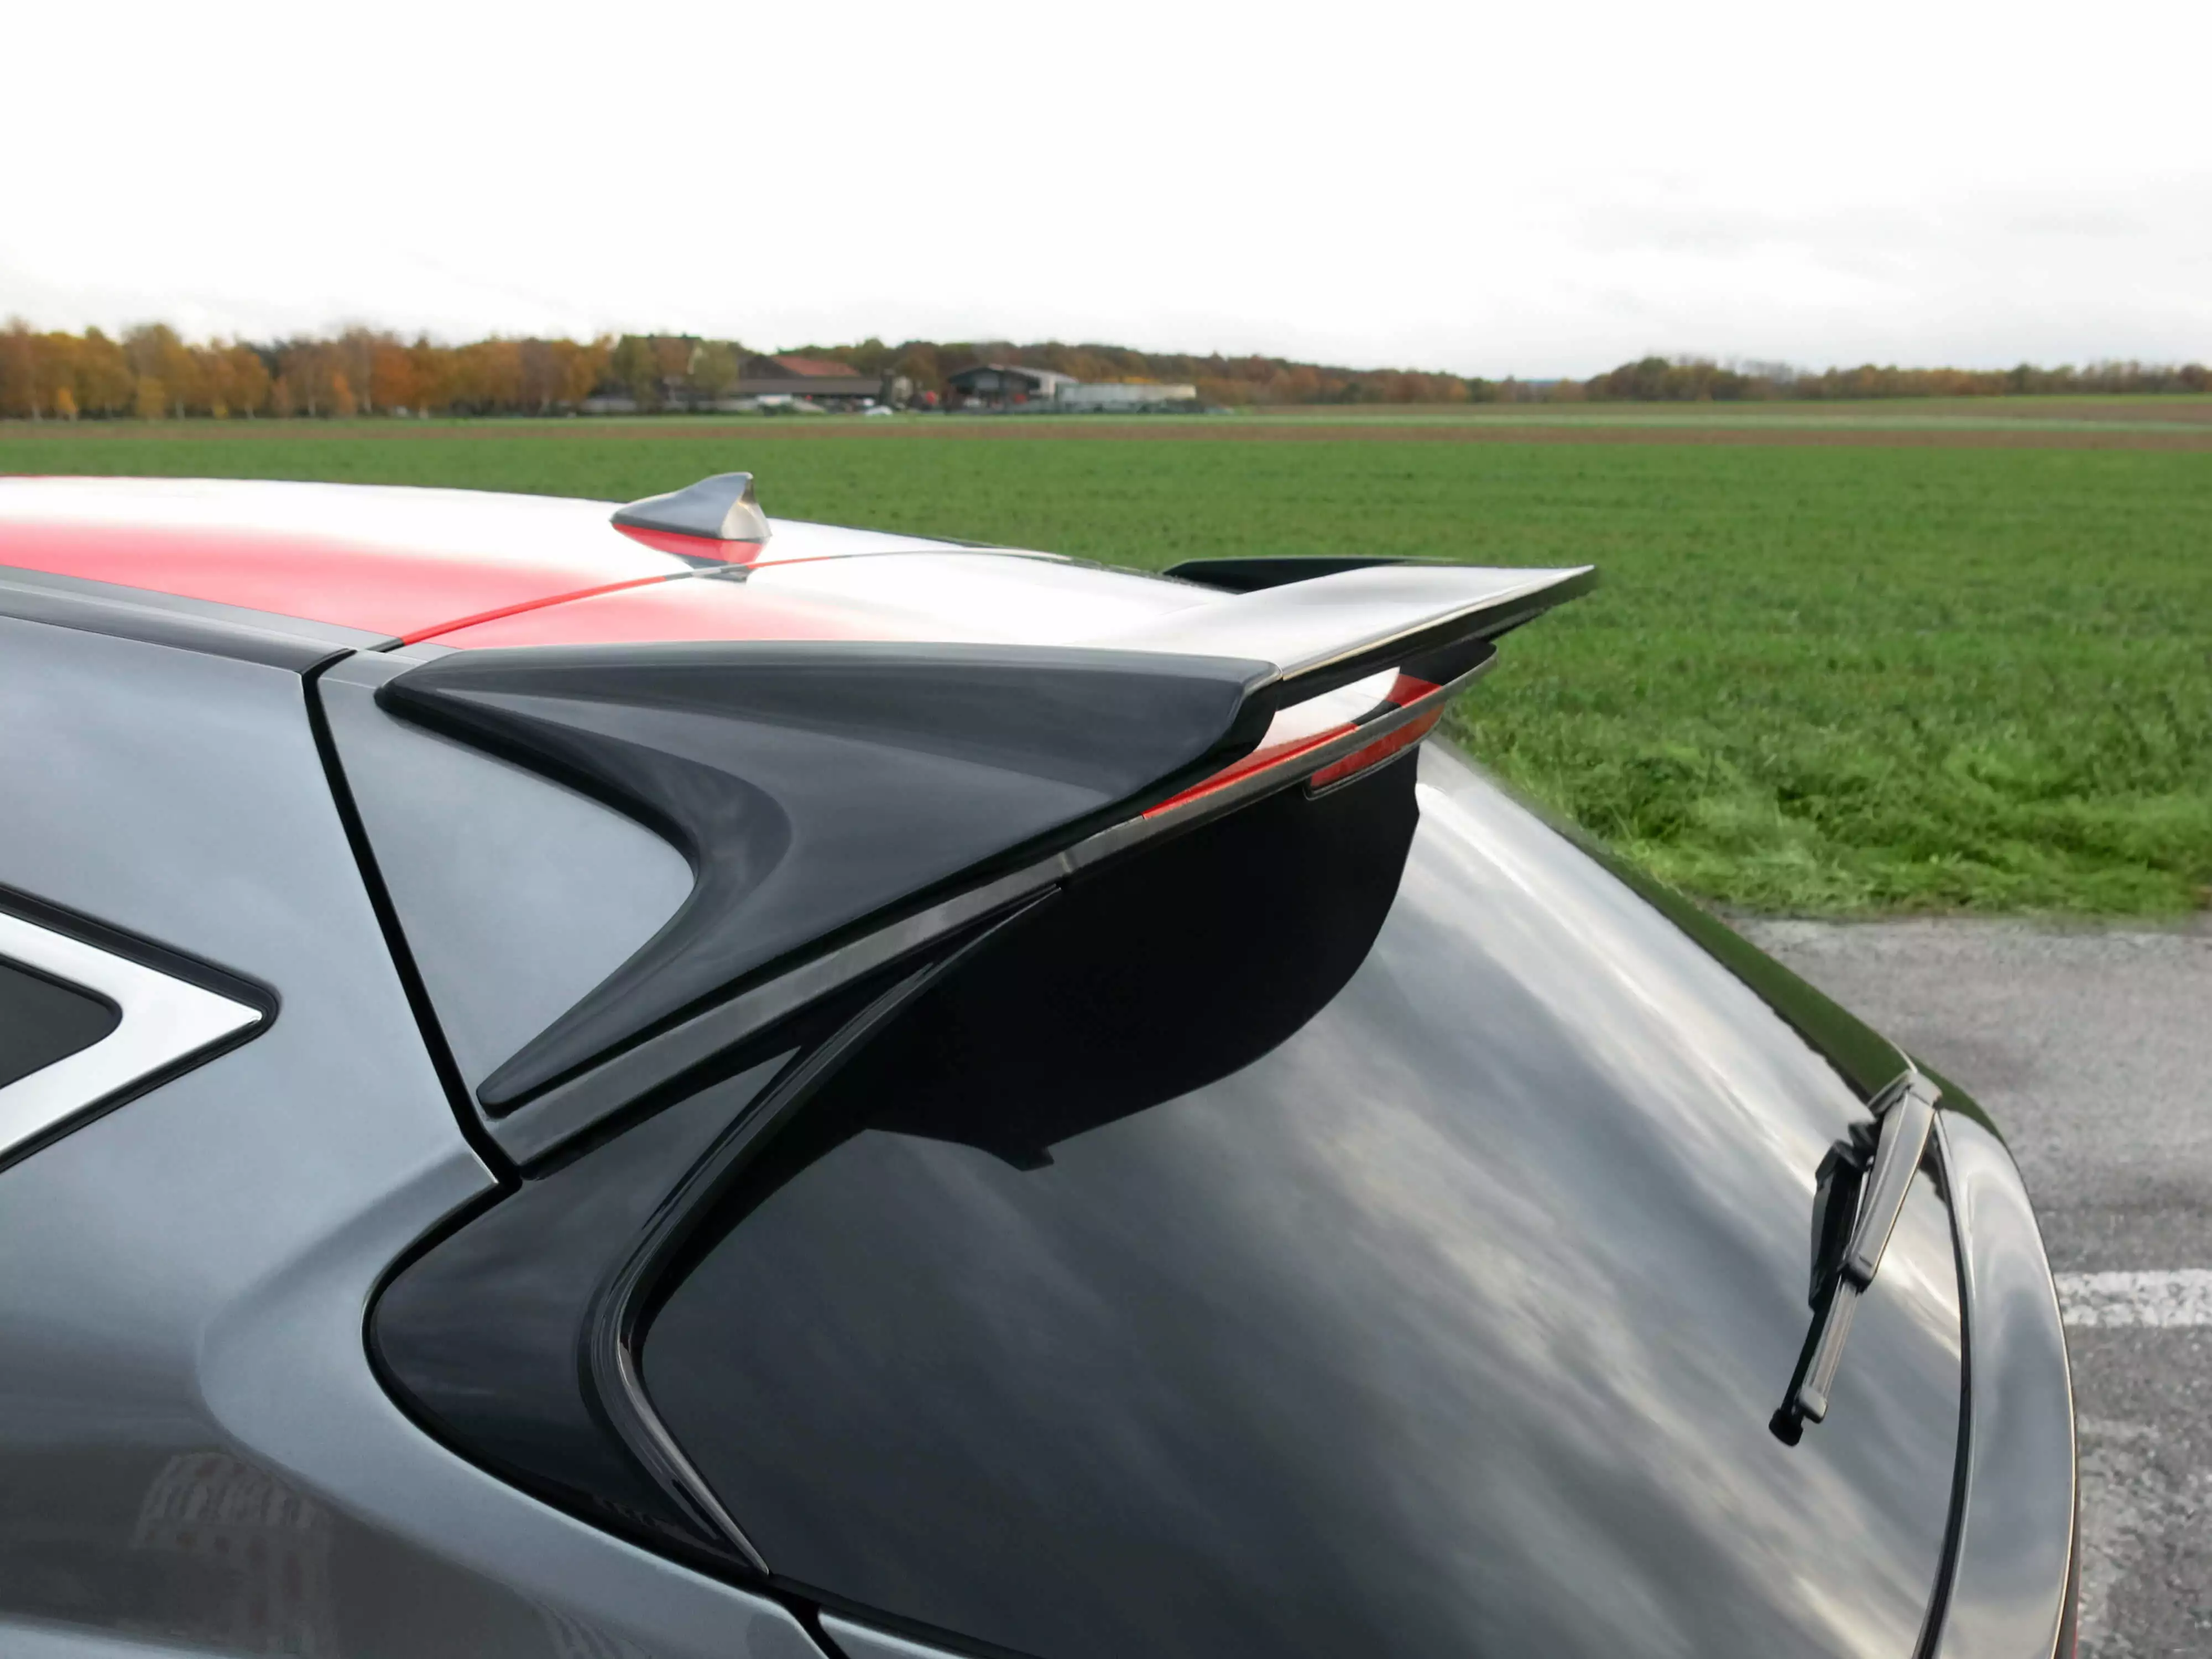 Erwerben Sie den glänzend schwarzen Dachspoiler für den Infiniti Q30 Luxury